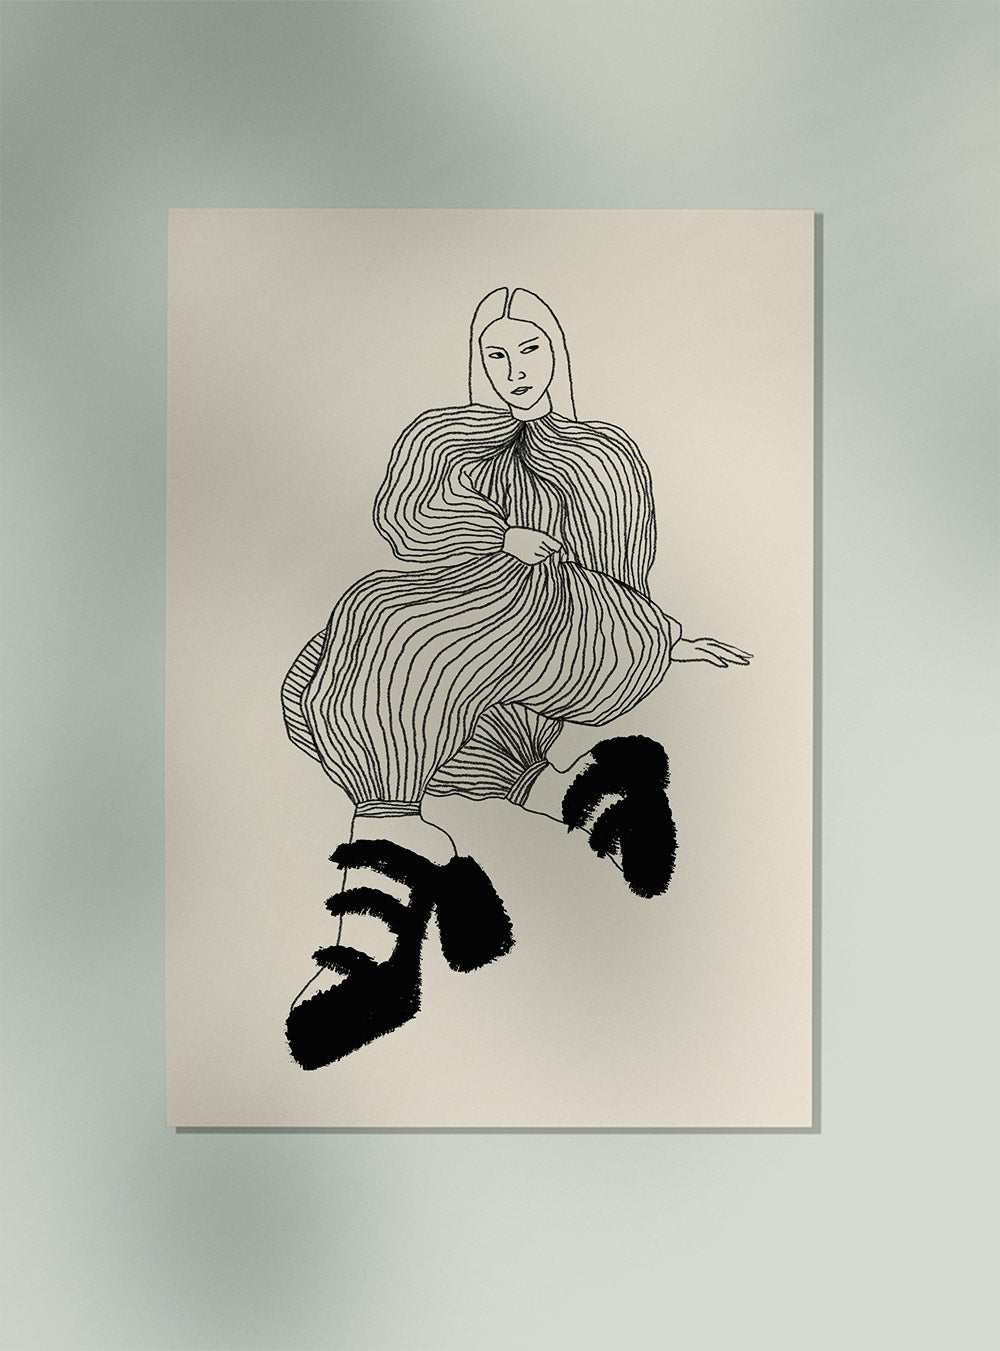  Girl Chill Stripe Dress Art Poster